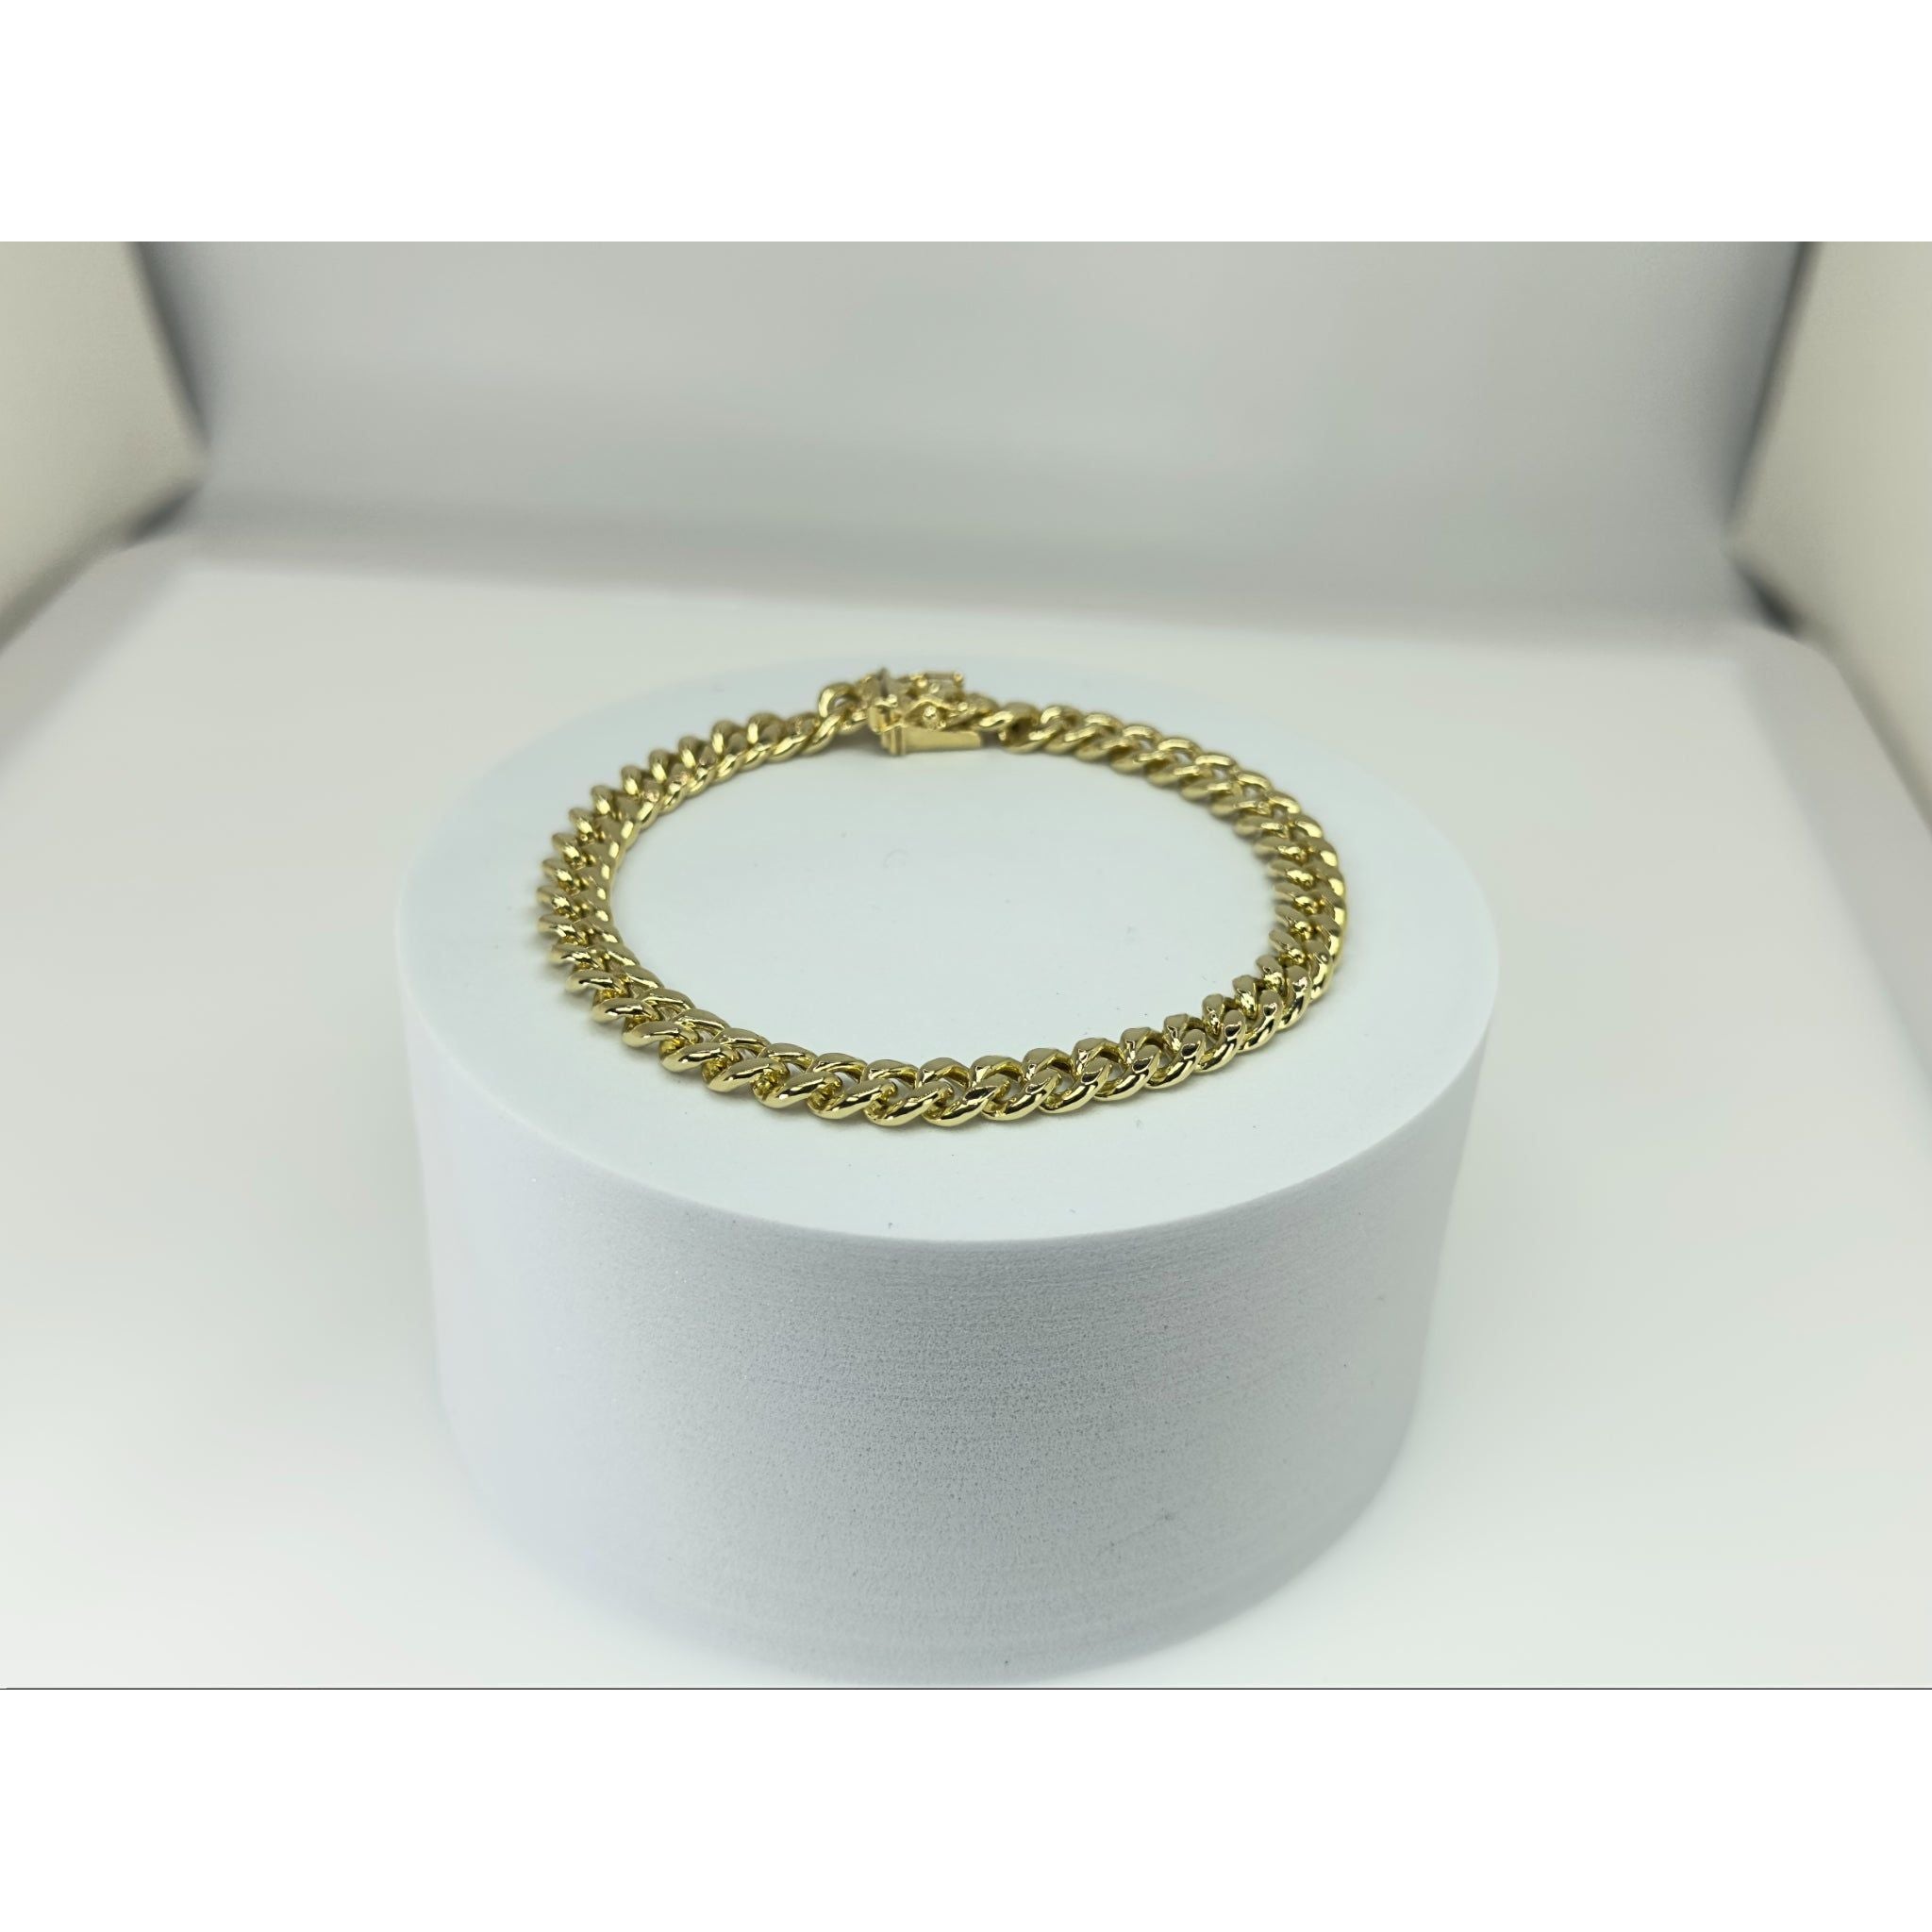 DR1711 - 14K Yellow Gold - Men's Gold Bracelet